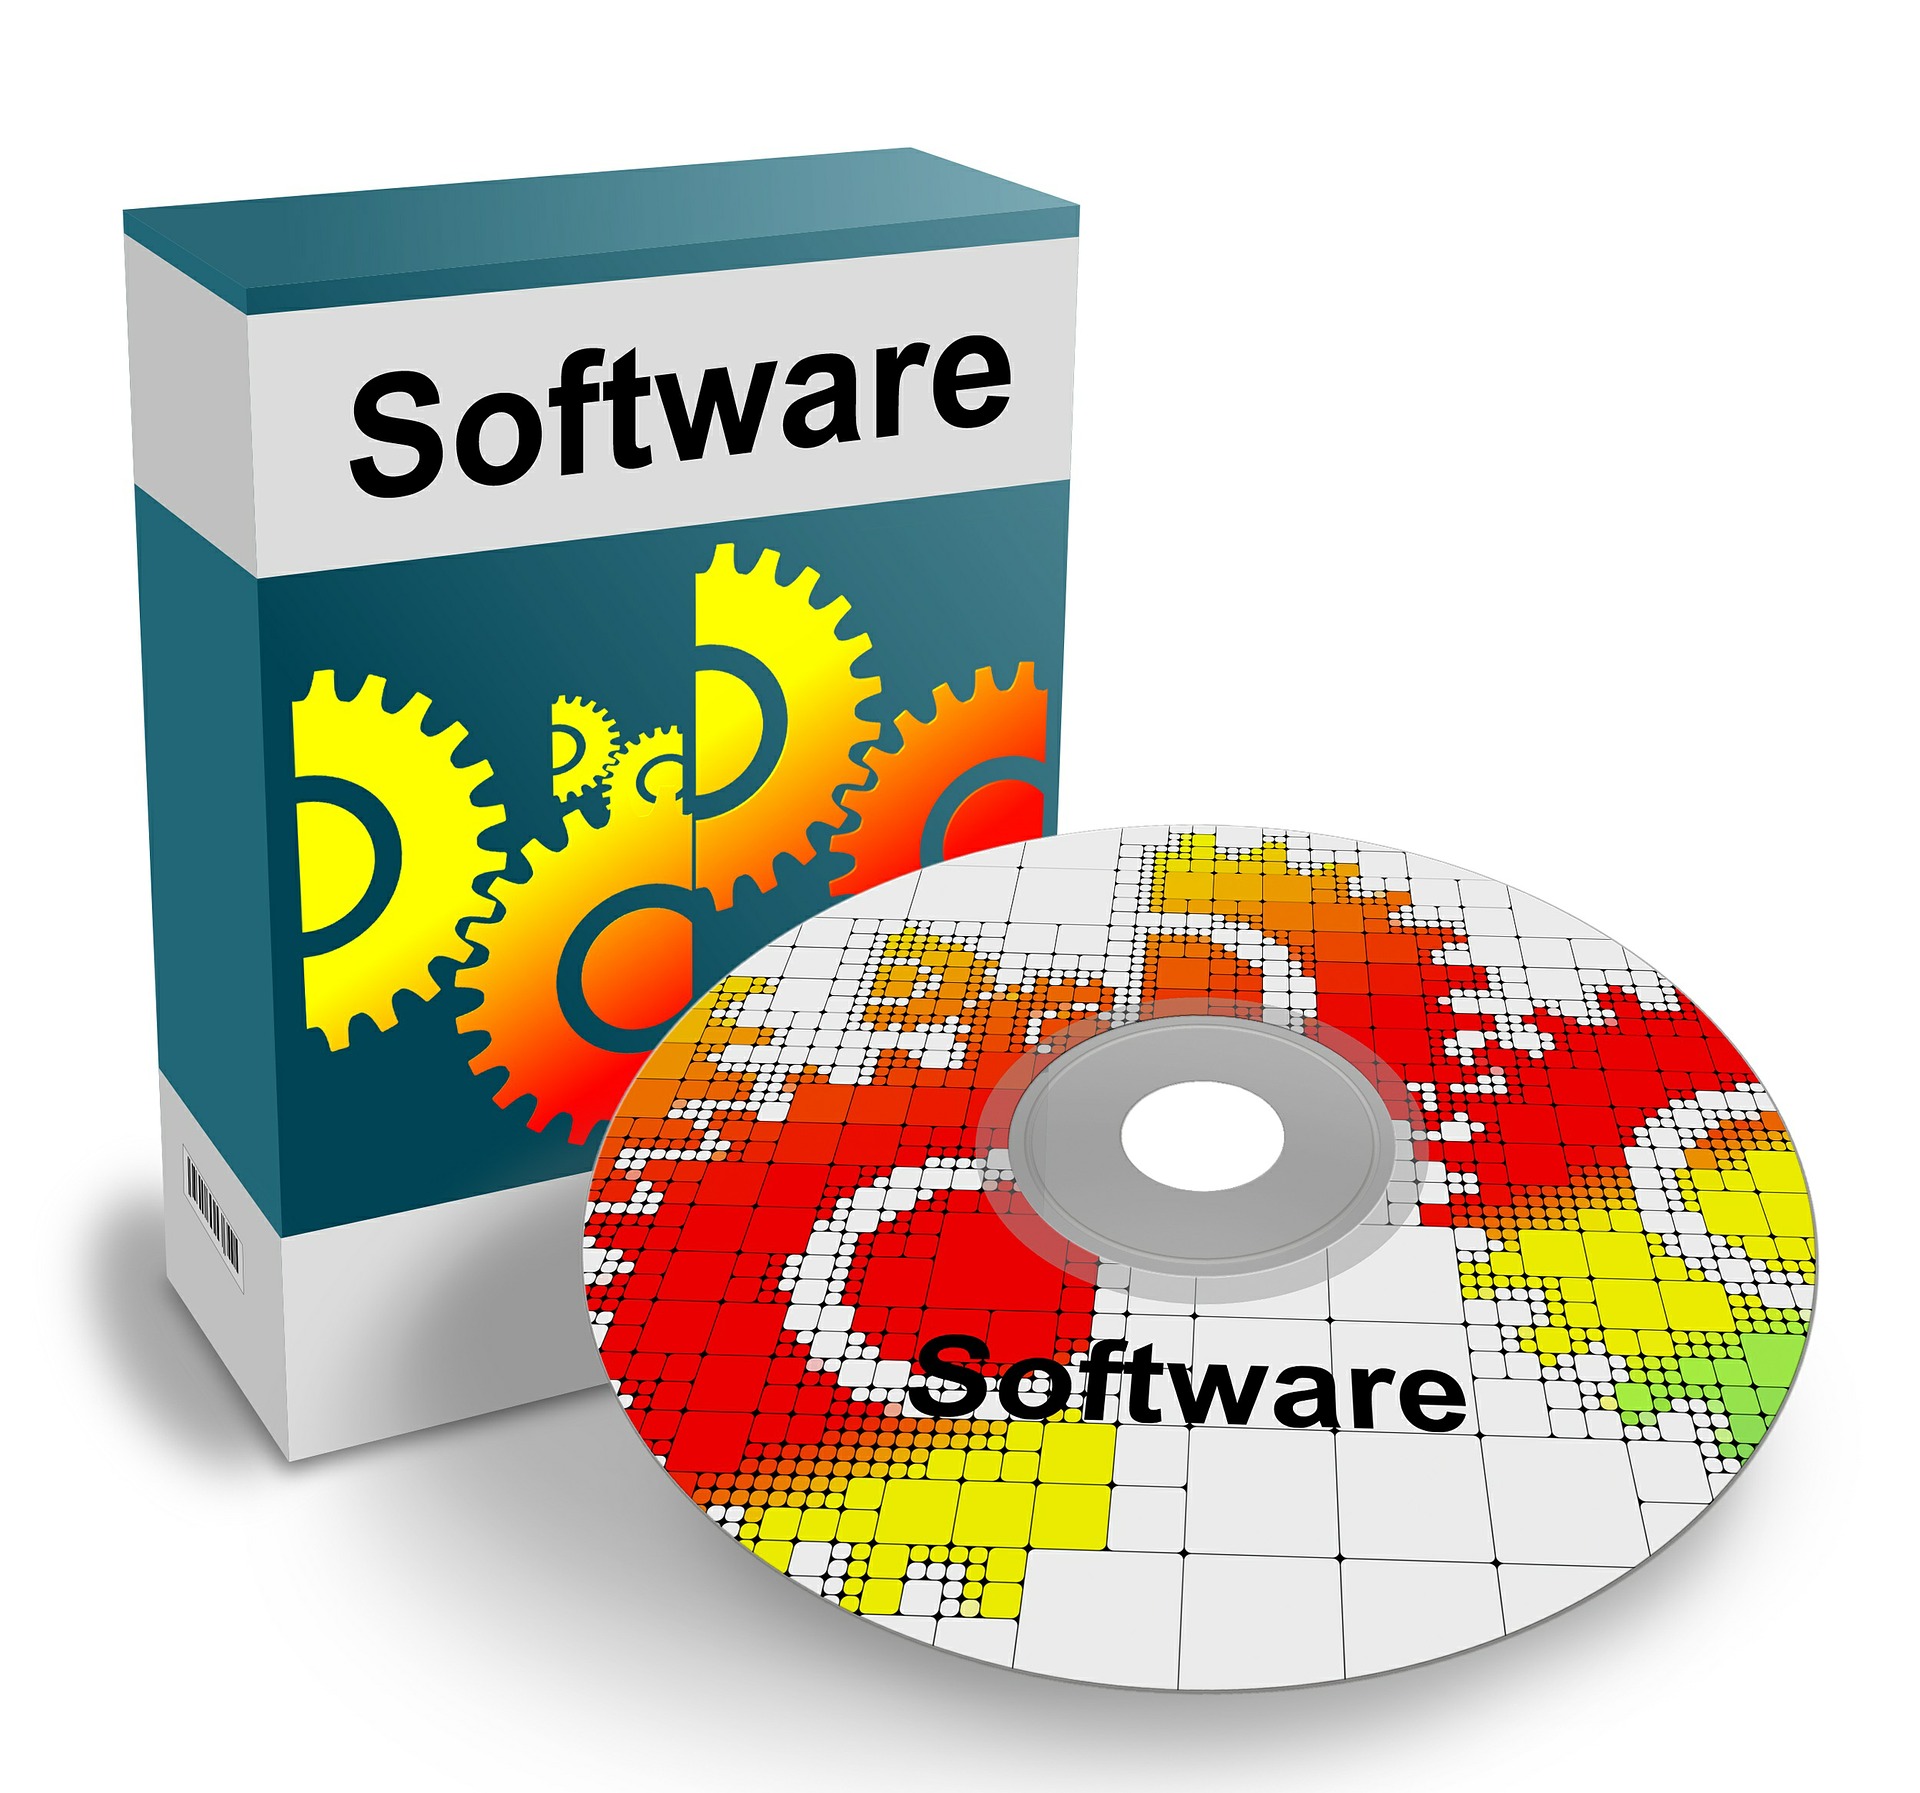 Caja y cdrom con la palabra software